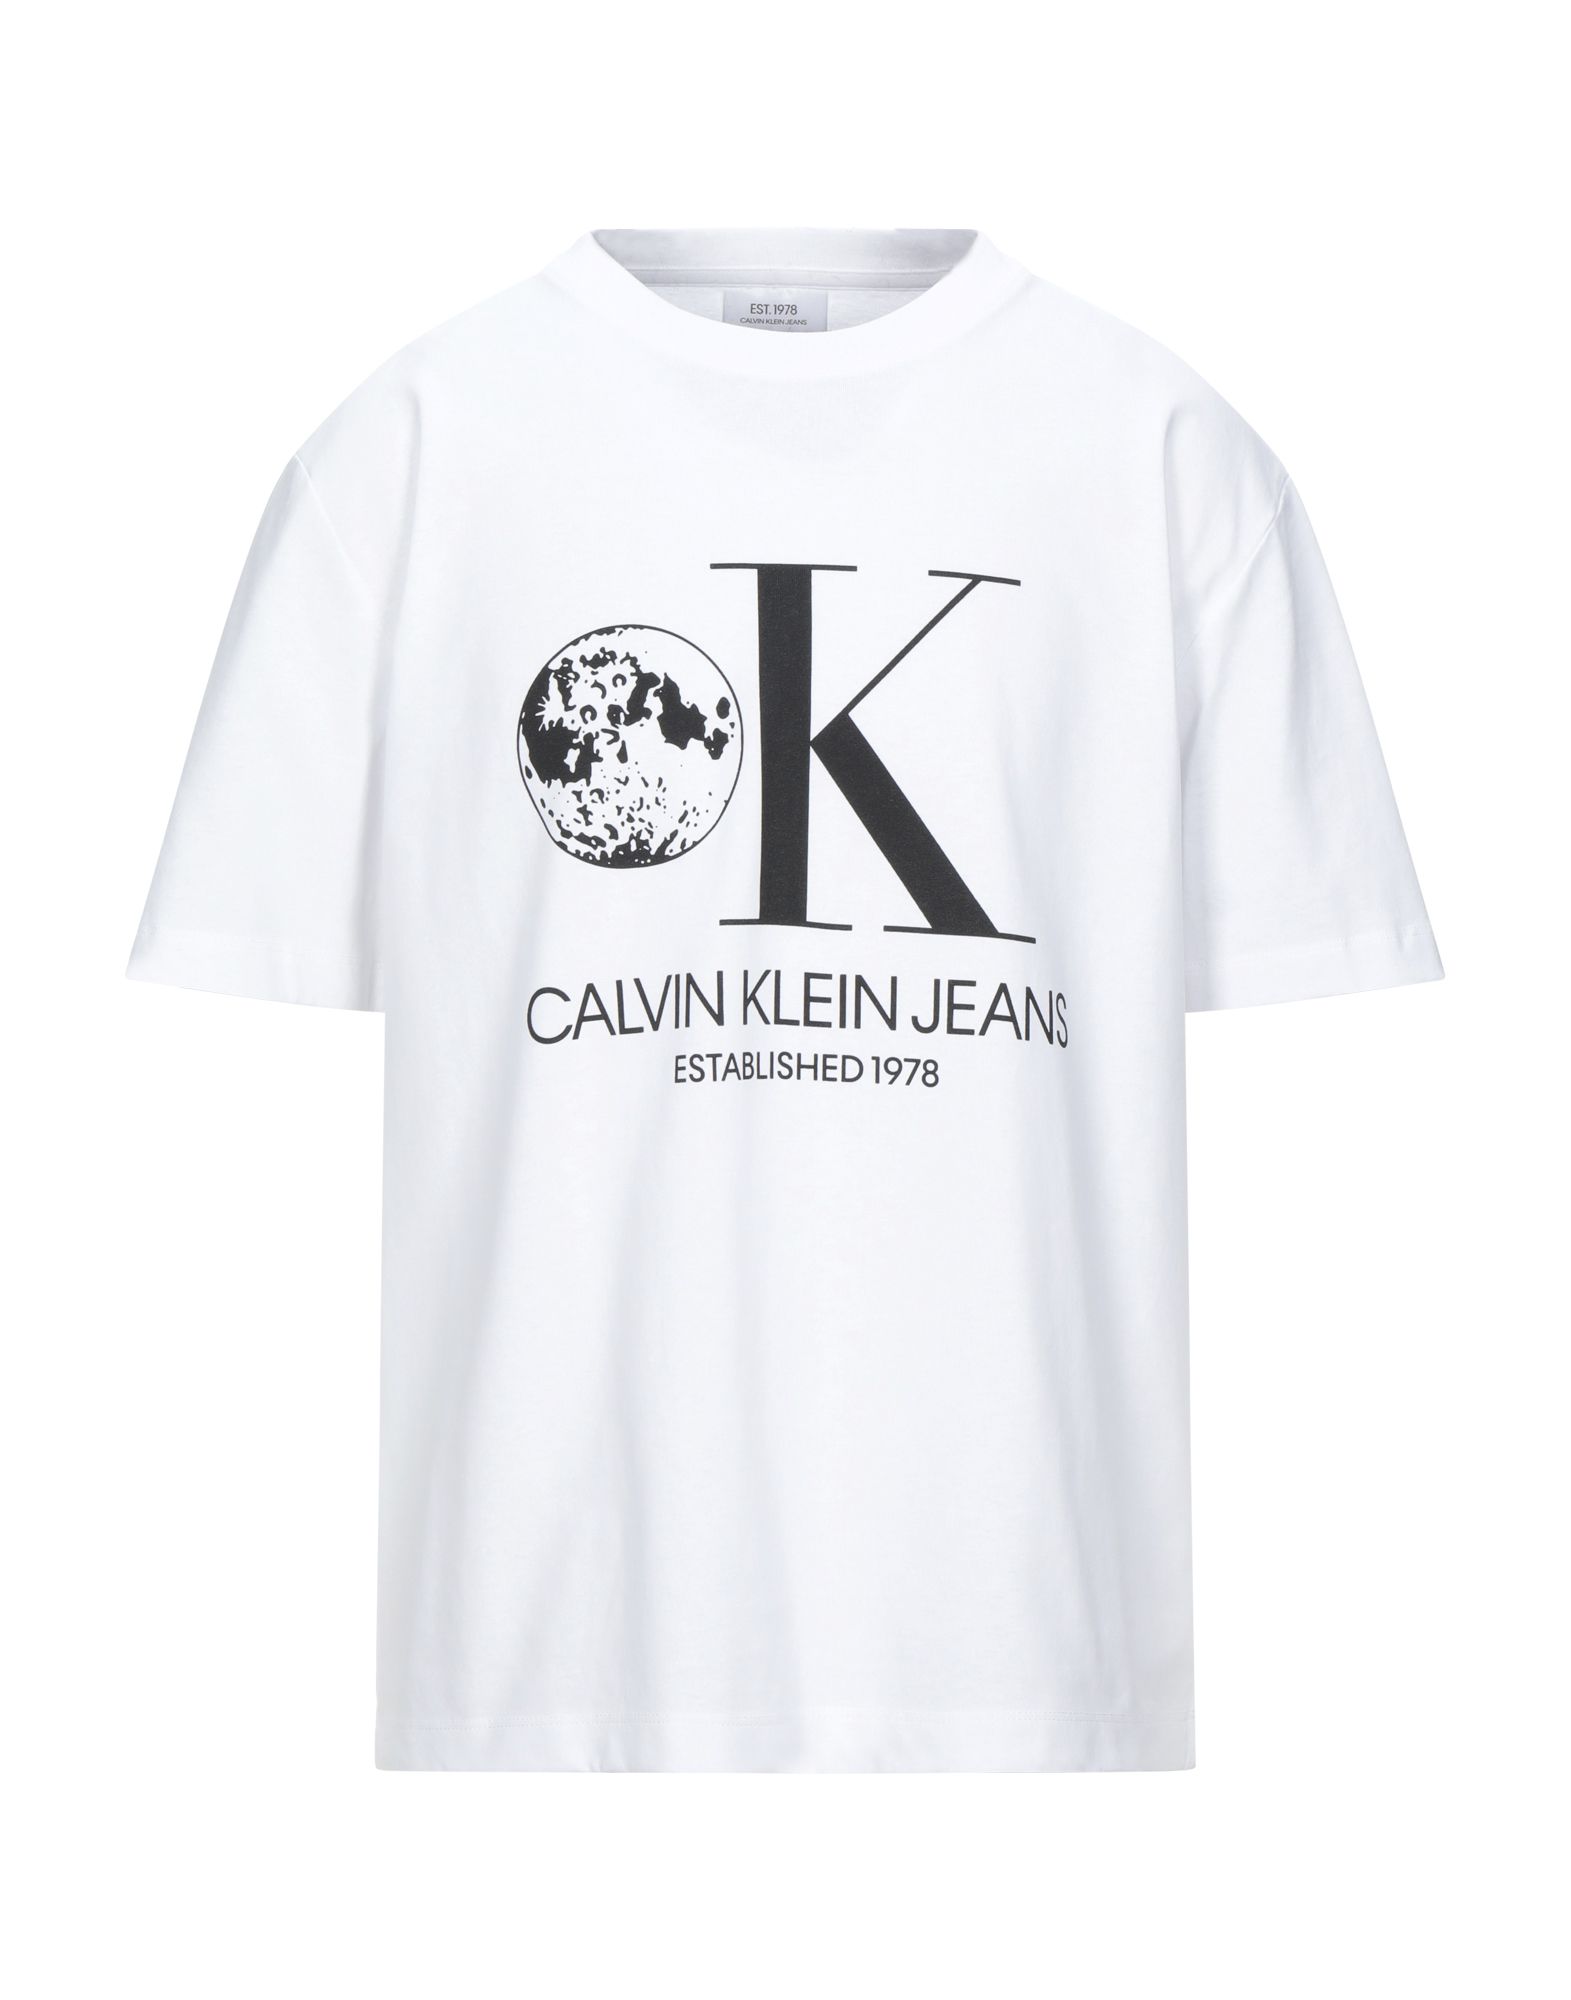 CALVIN KLEIN JEANS Футболка футболка calvin klein jeans calvin klein jeans ca939emapqx5